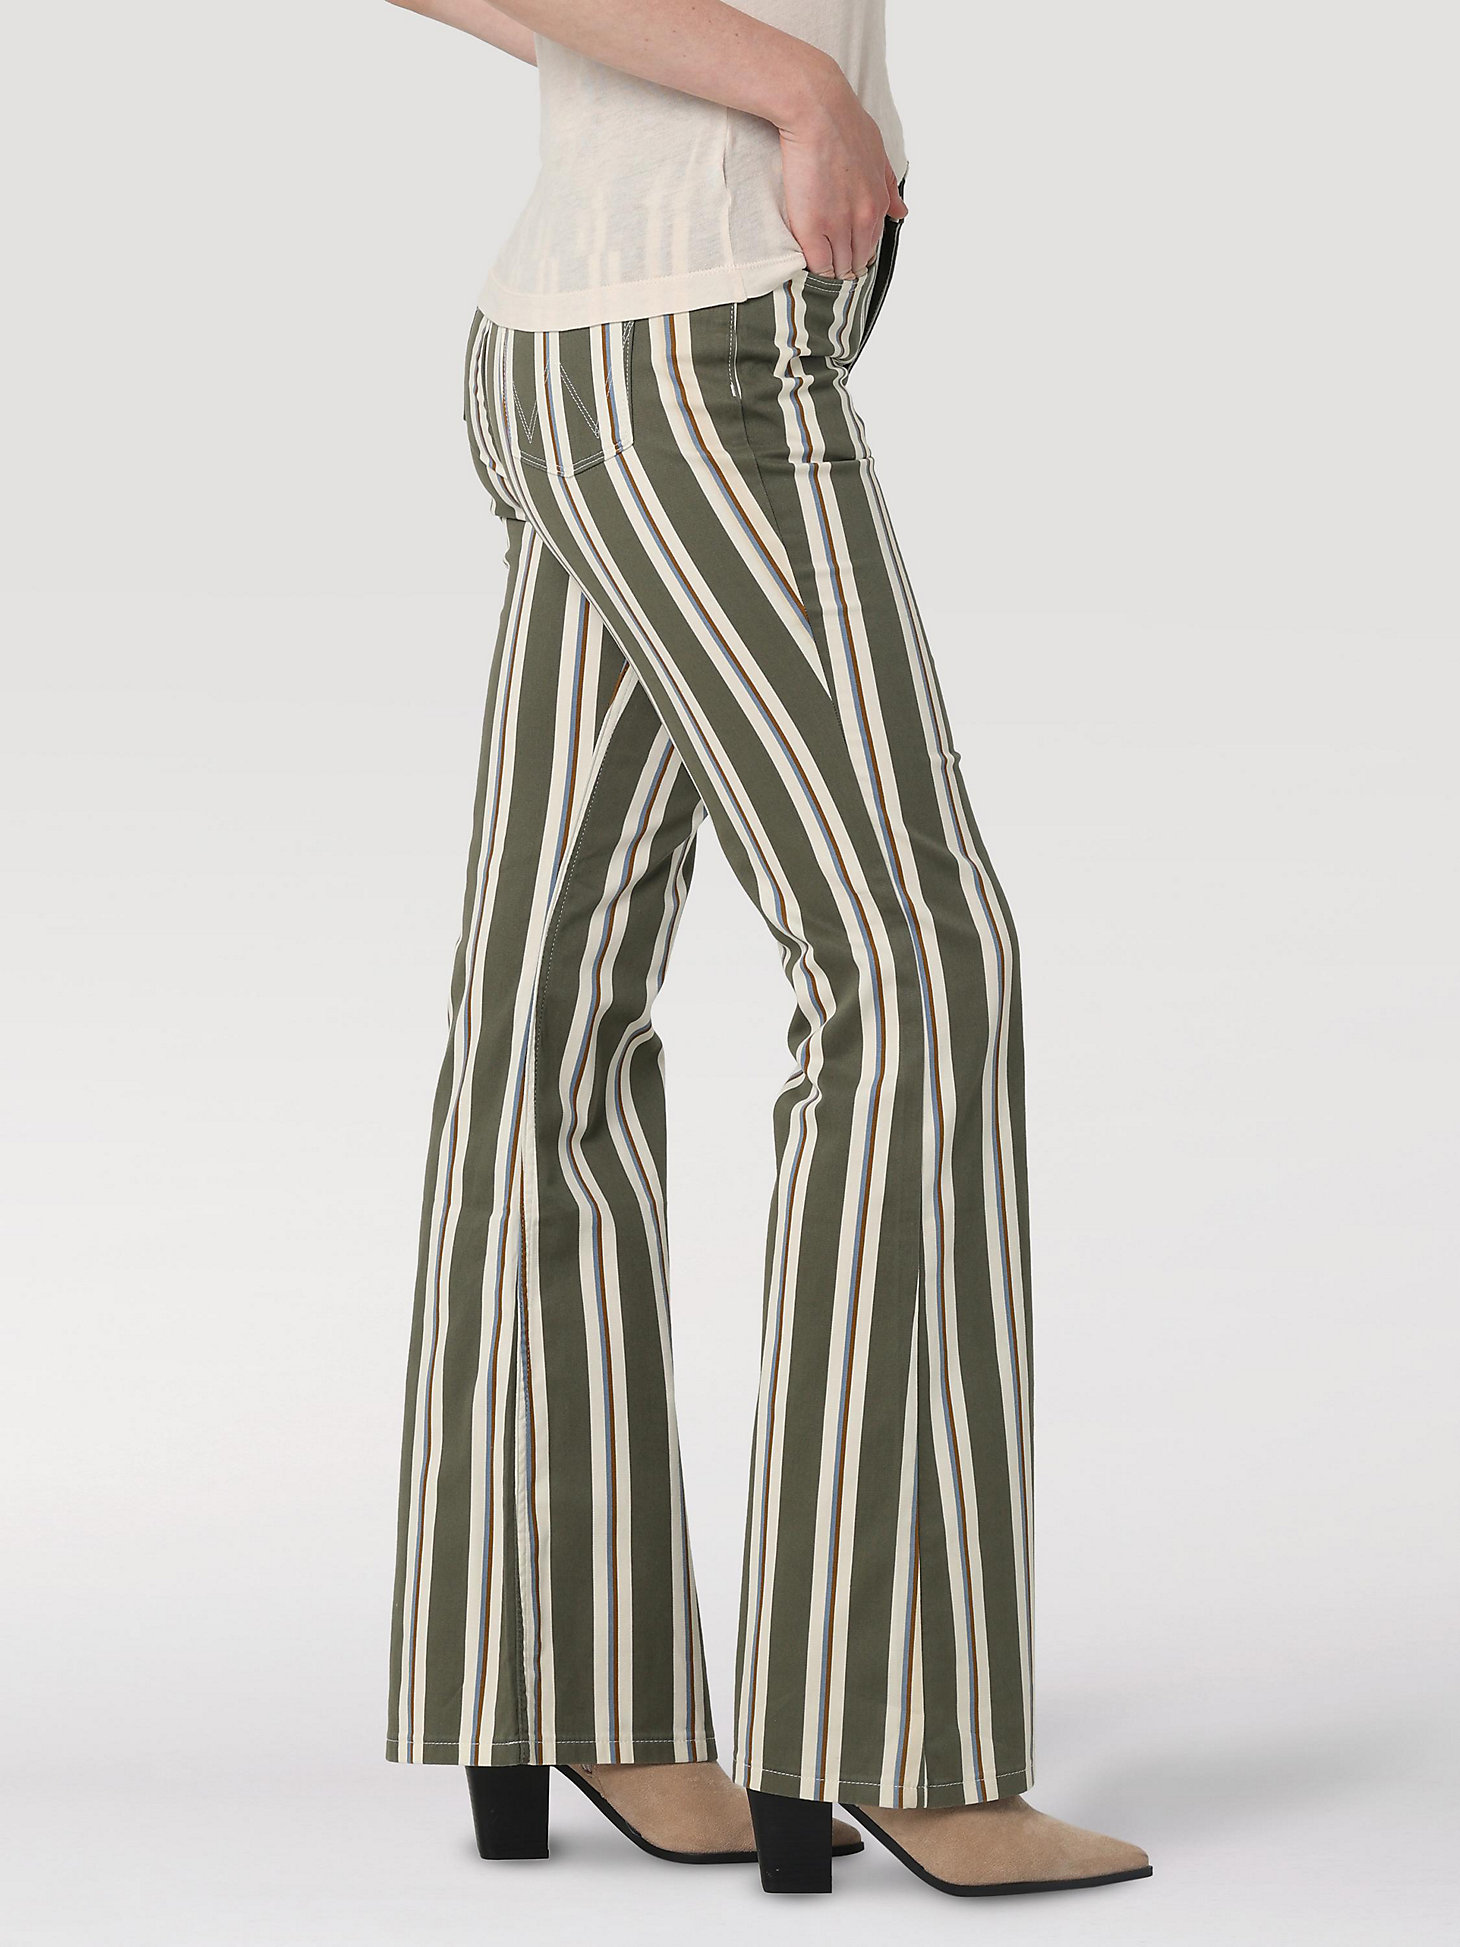 Women's Fierce Flare Stripe Jean in Moss alternative view 1